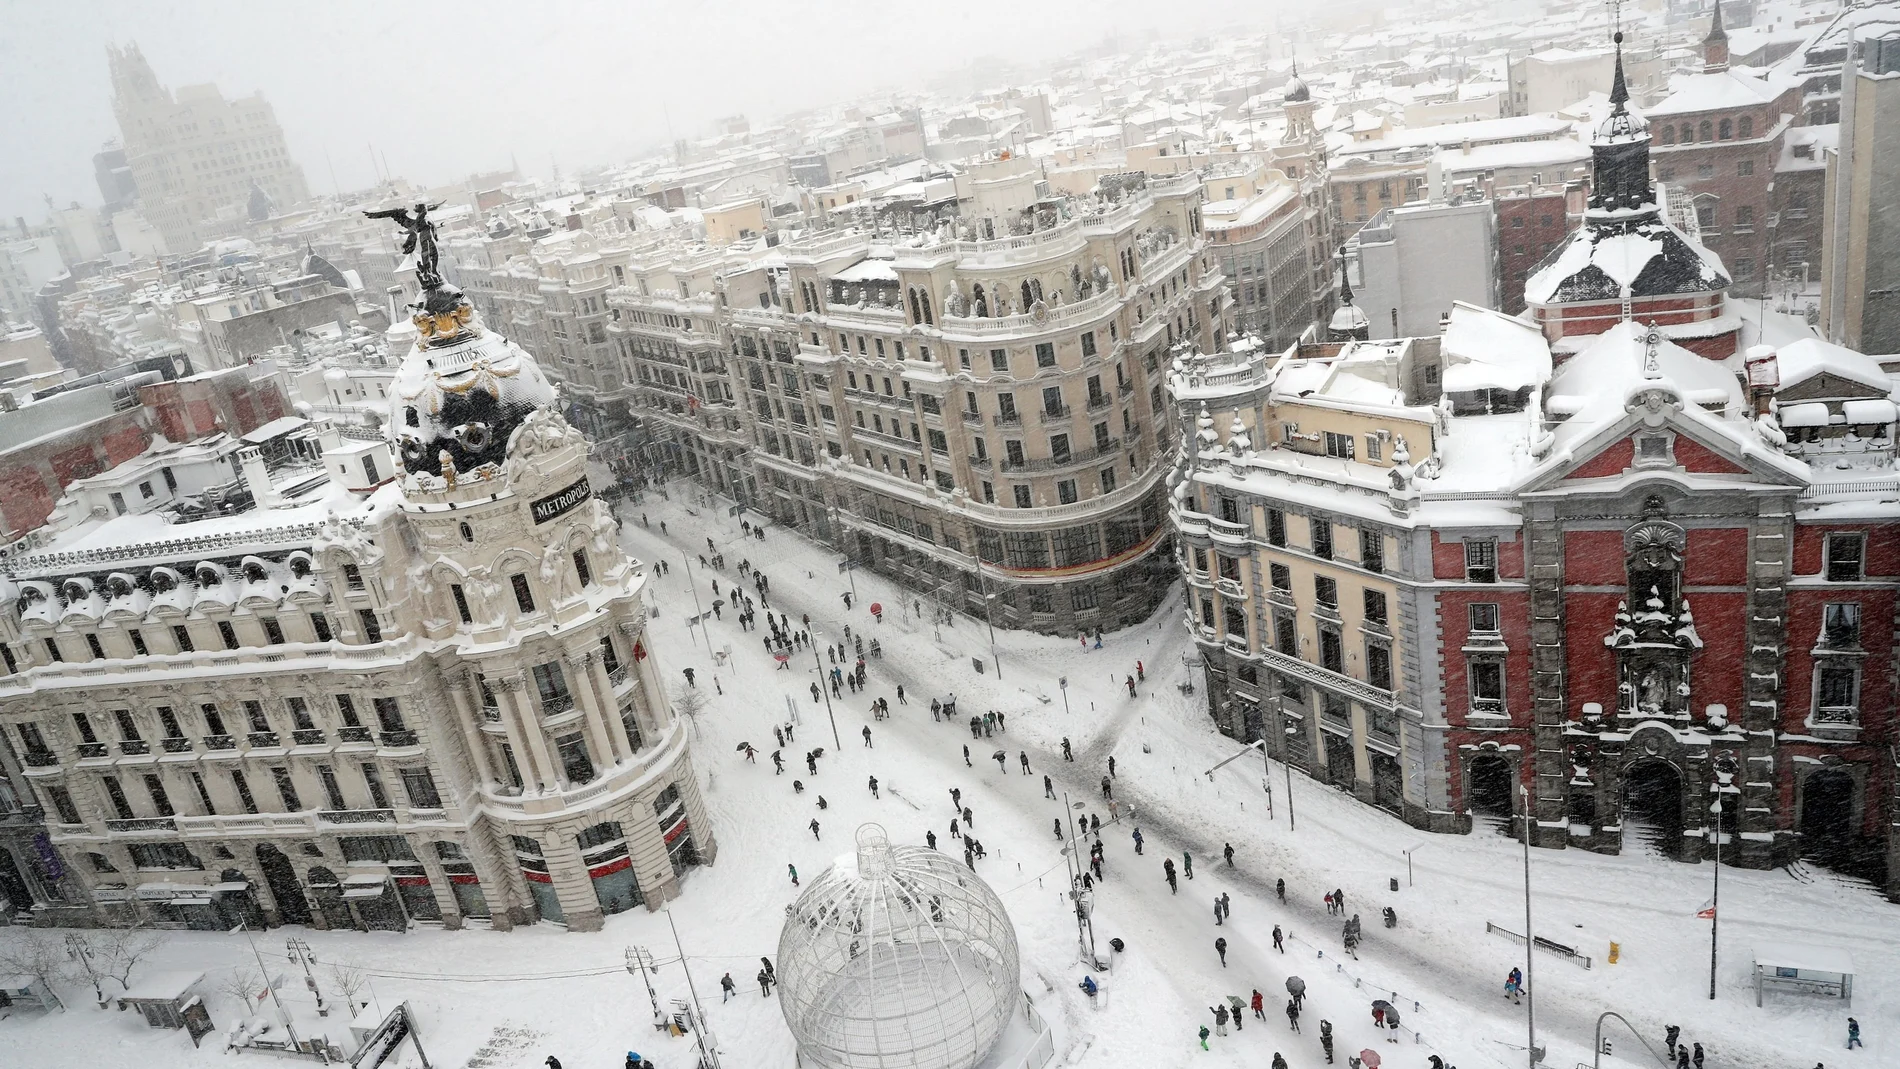 El emblemático cruce madrileño de la Gran Vía con la calle Alcalá ayer cambió el caos de tráfico por ciudadanos paseando sobre la nieve